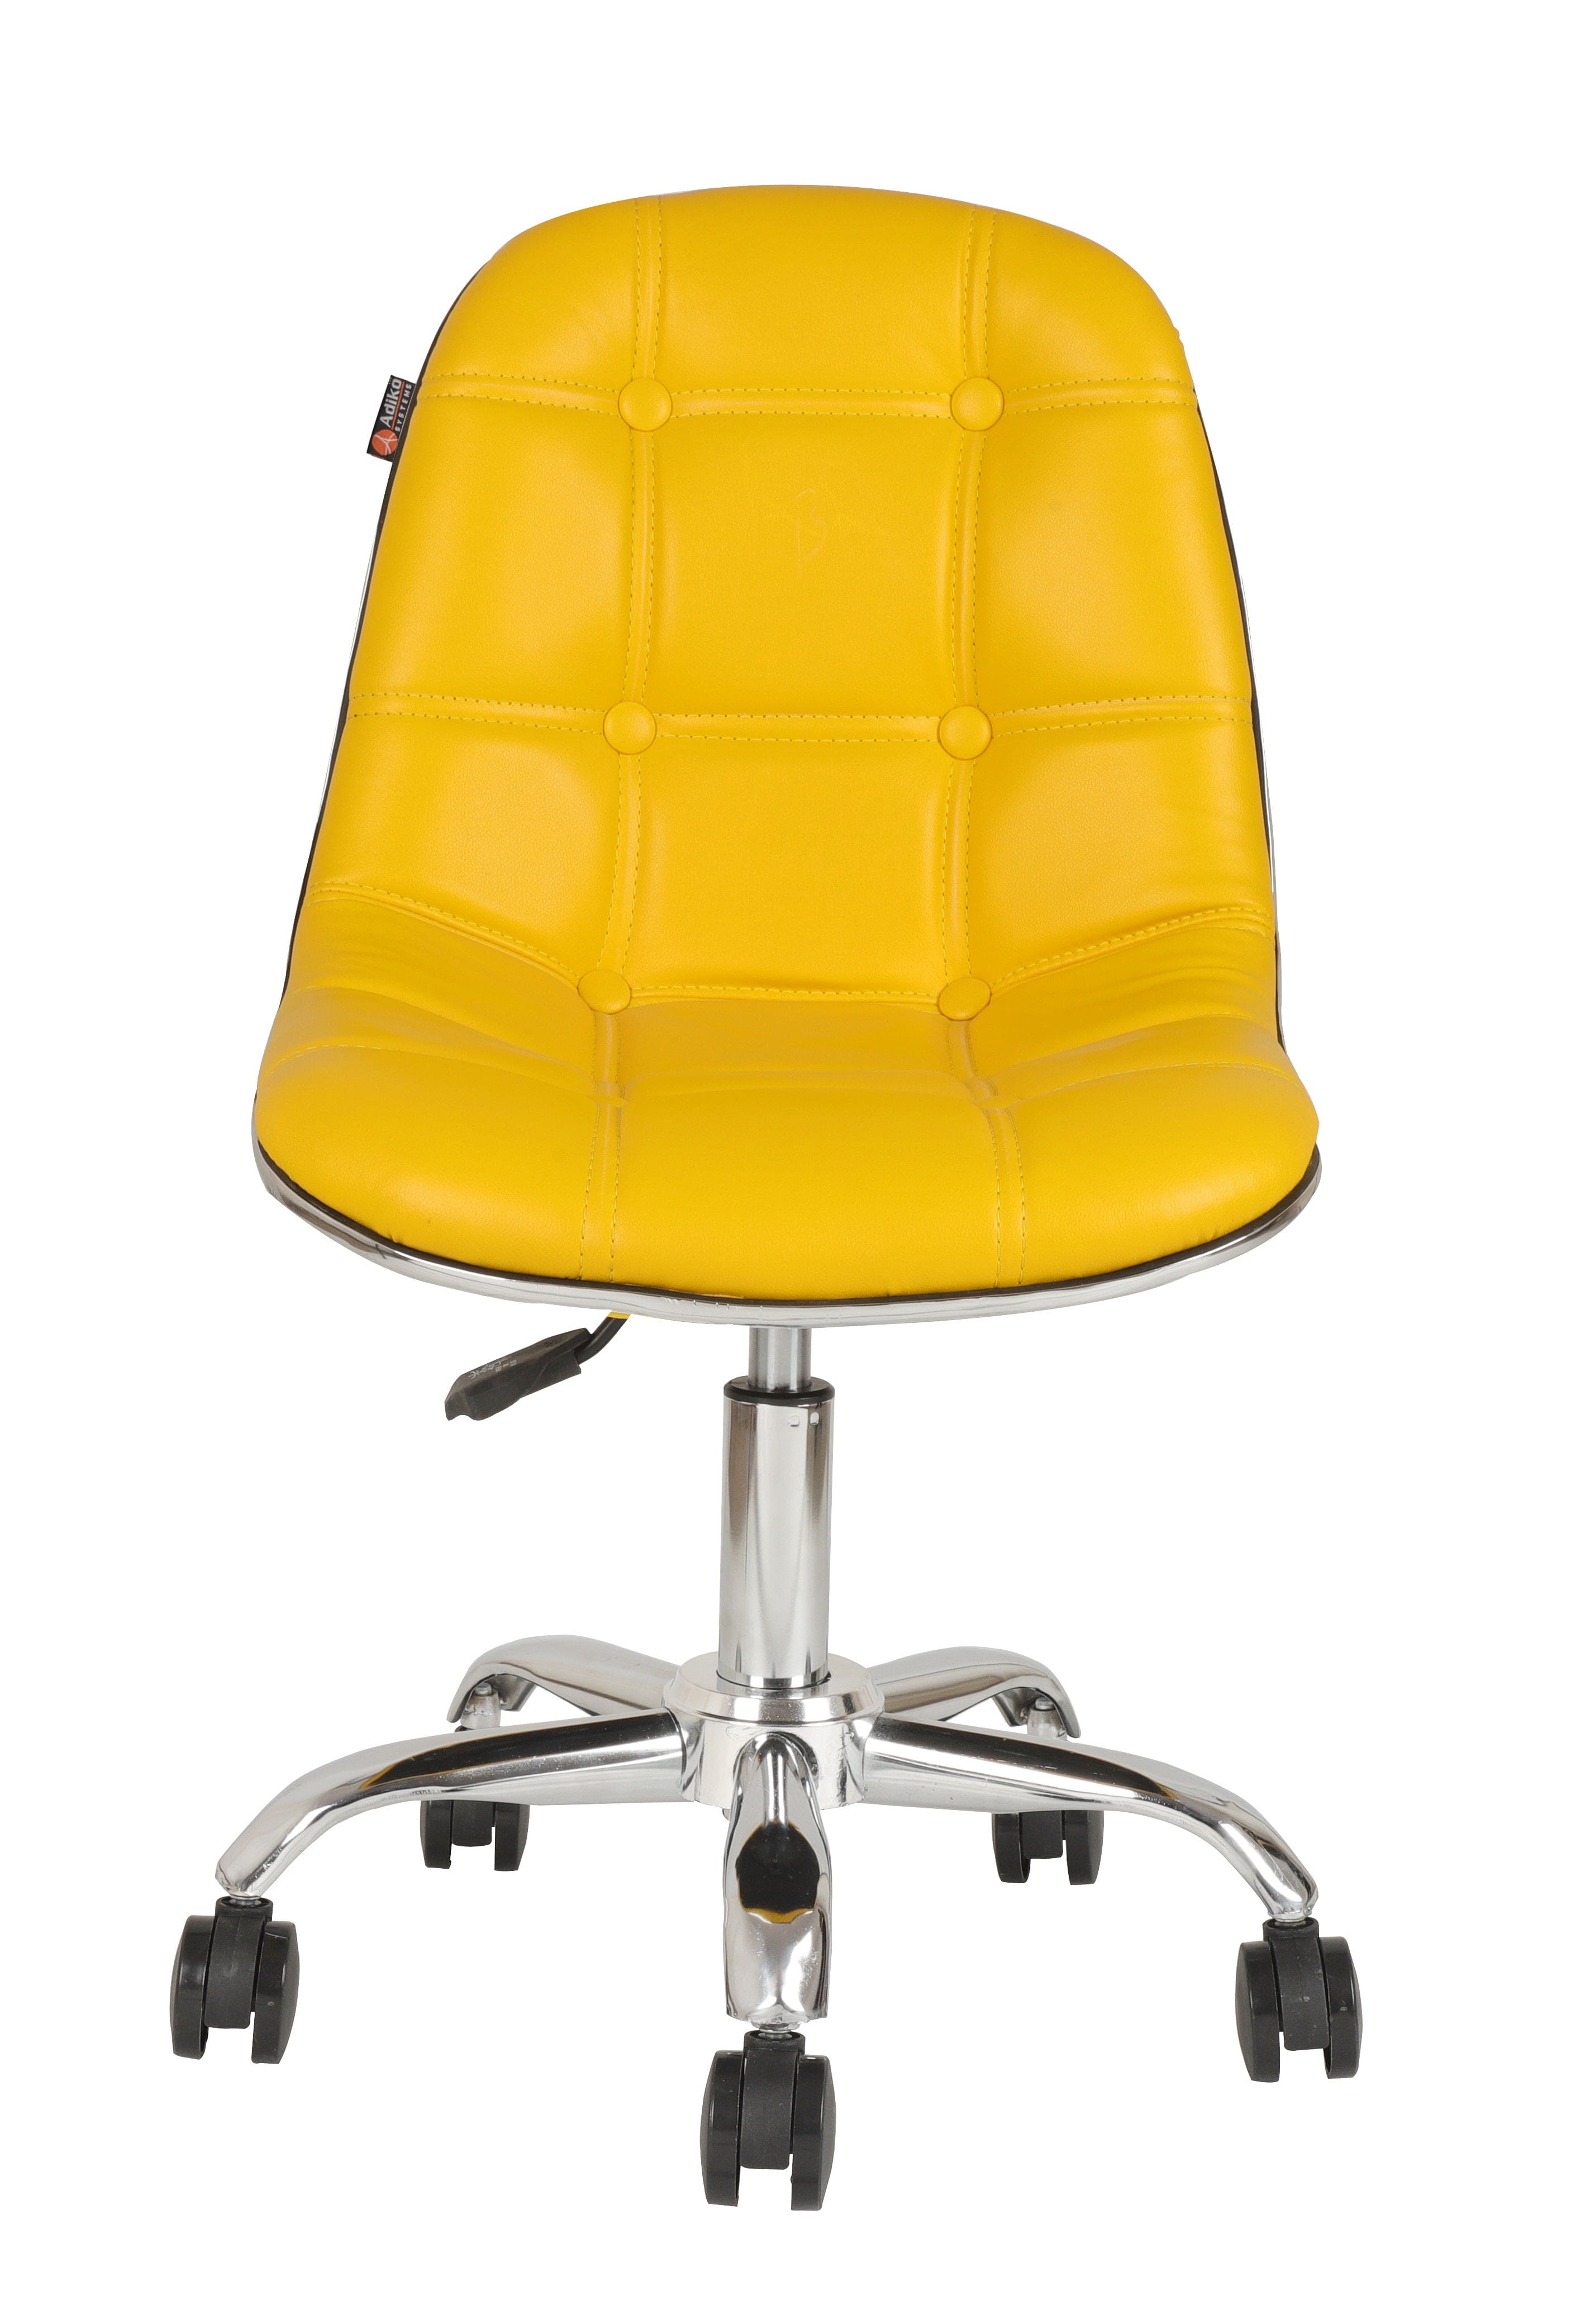 Adiko Lounge Chair in Yellow